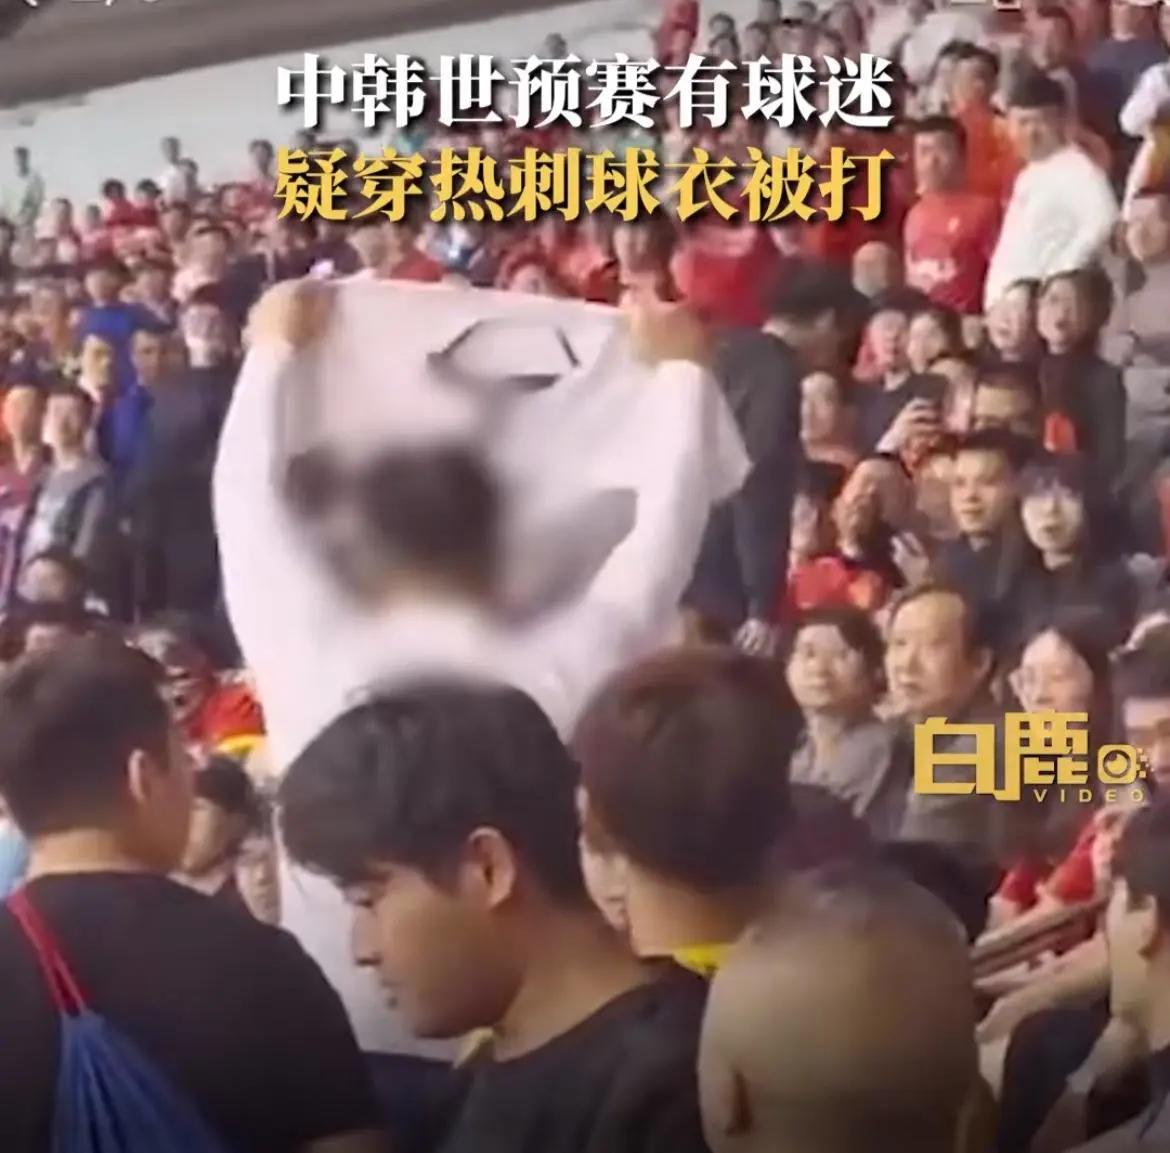 深圳主场球迷冲突事件引发关注